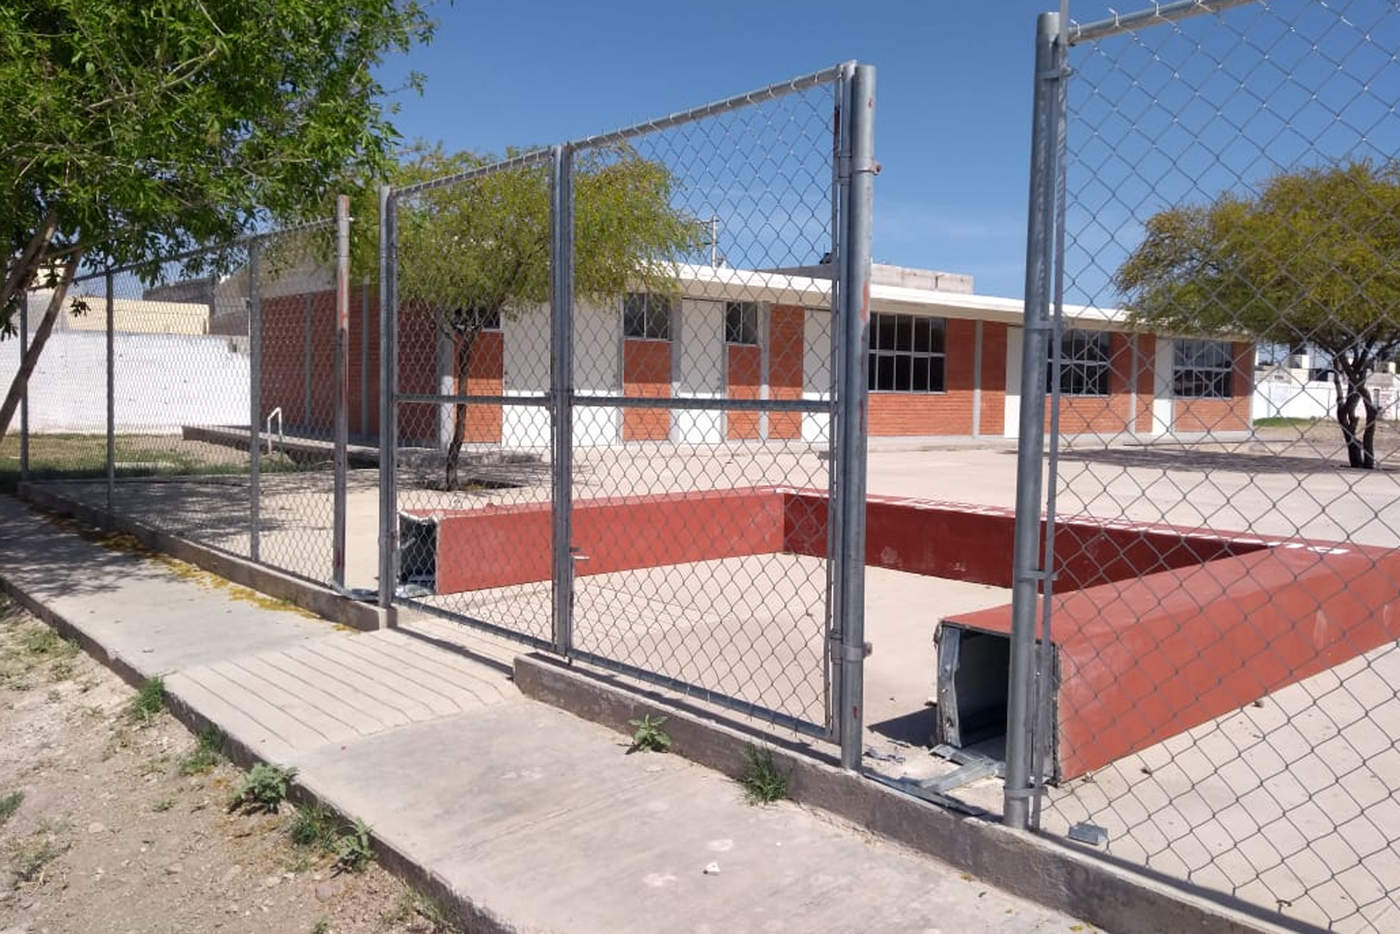 Las fuertes ráfagas de viento que se registraron durante la semana pasada, derribaron el arco en la entrada de la escuela 'Ramón Iriarte' de Villas de la Huerta, vecinos piden su reparación. (ROBERTO ITURRIAGA)